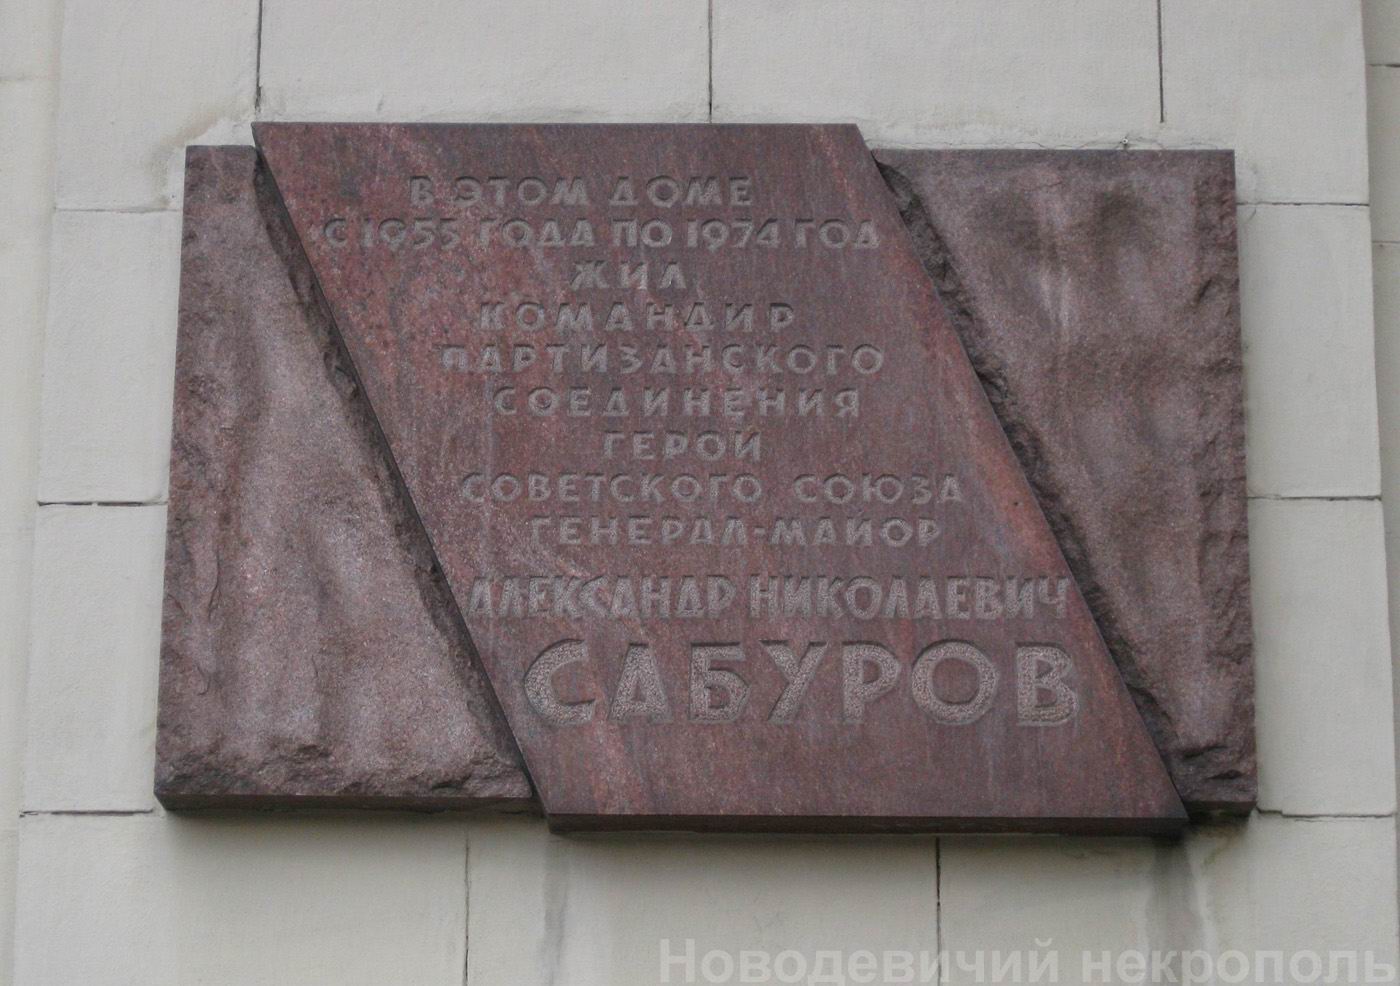 Мемориальная доска Сабурову А.Н. (1908–1974), арх. В.А.Климов, на Кудринской площади, дом 1, открыта 8.5.1975.